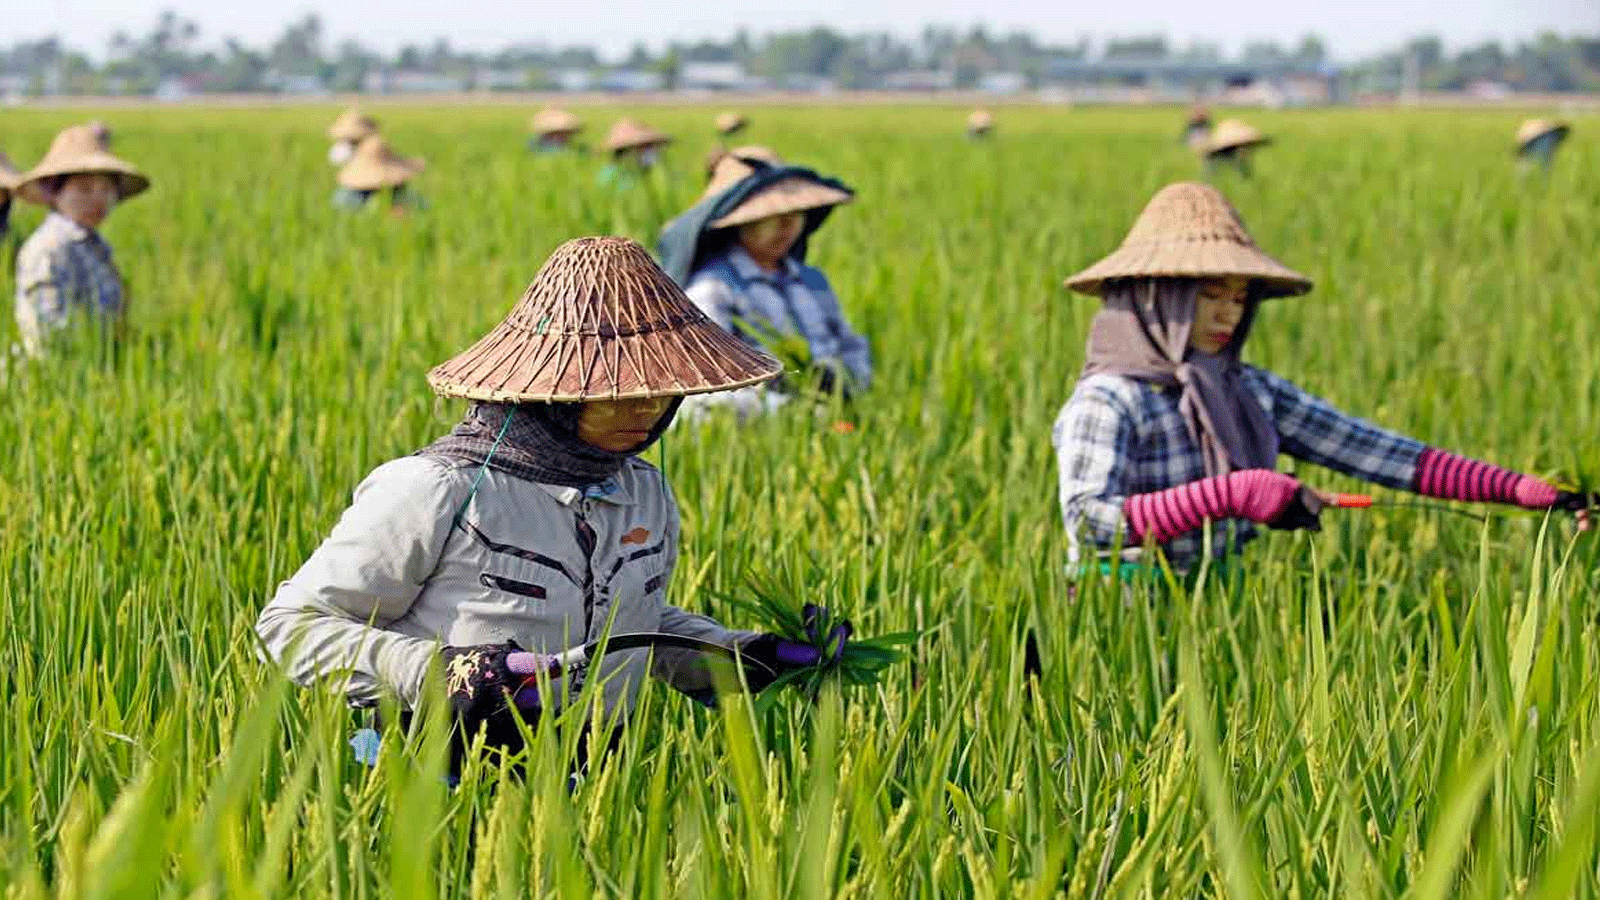 عمال مزرعة يحصدون الأرز. في 1 أيار\مايو 2018 خلال عيد العمال في ميانمار.